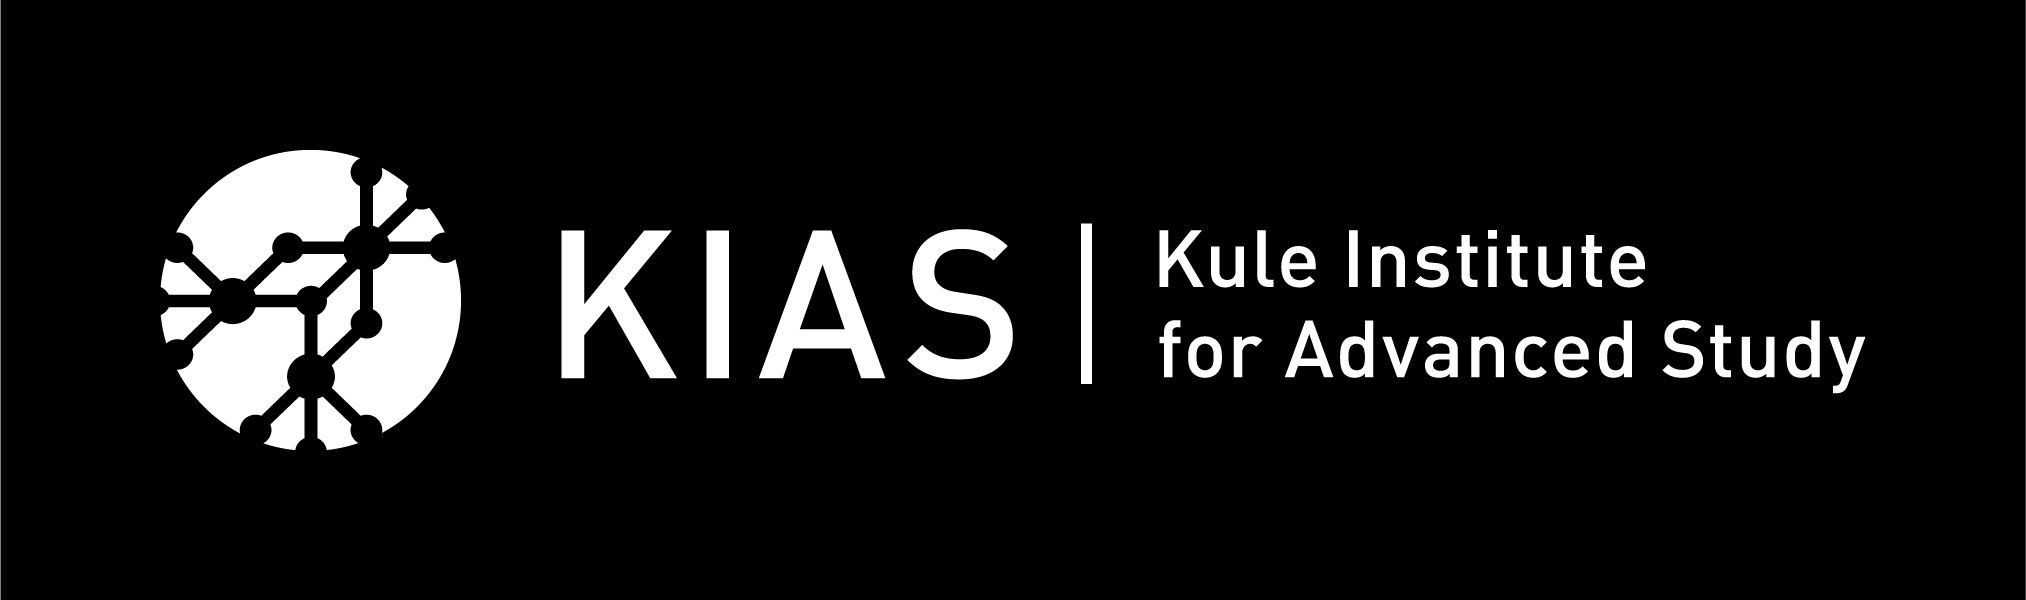 KIAS logo